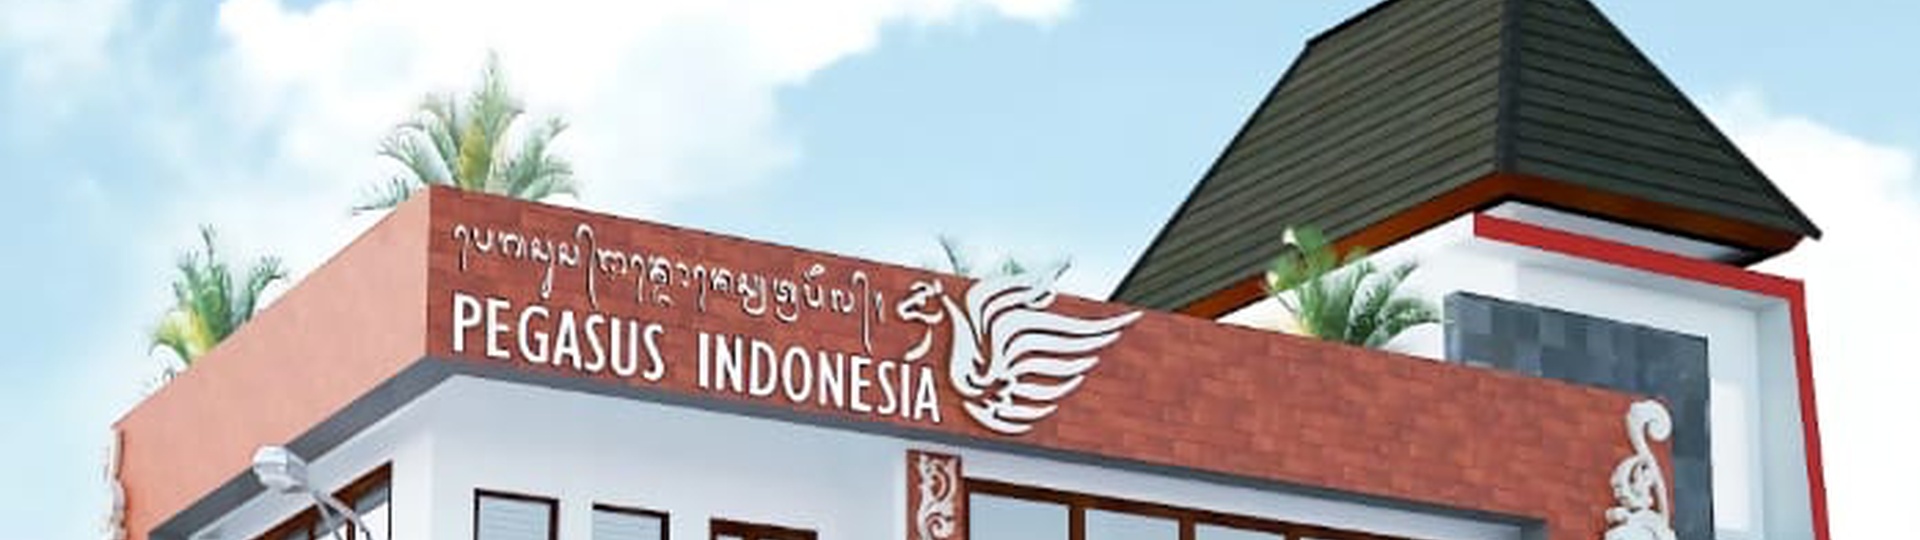 Pegasus Indonesia Travel - Background